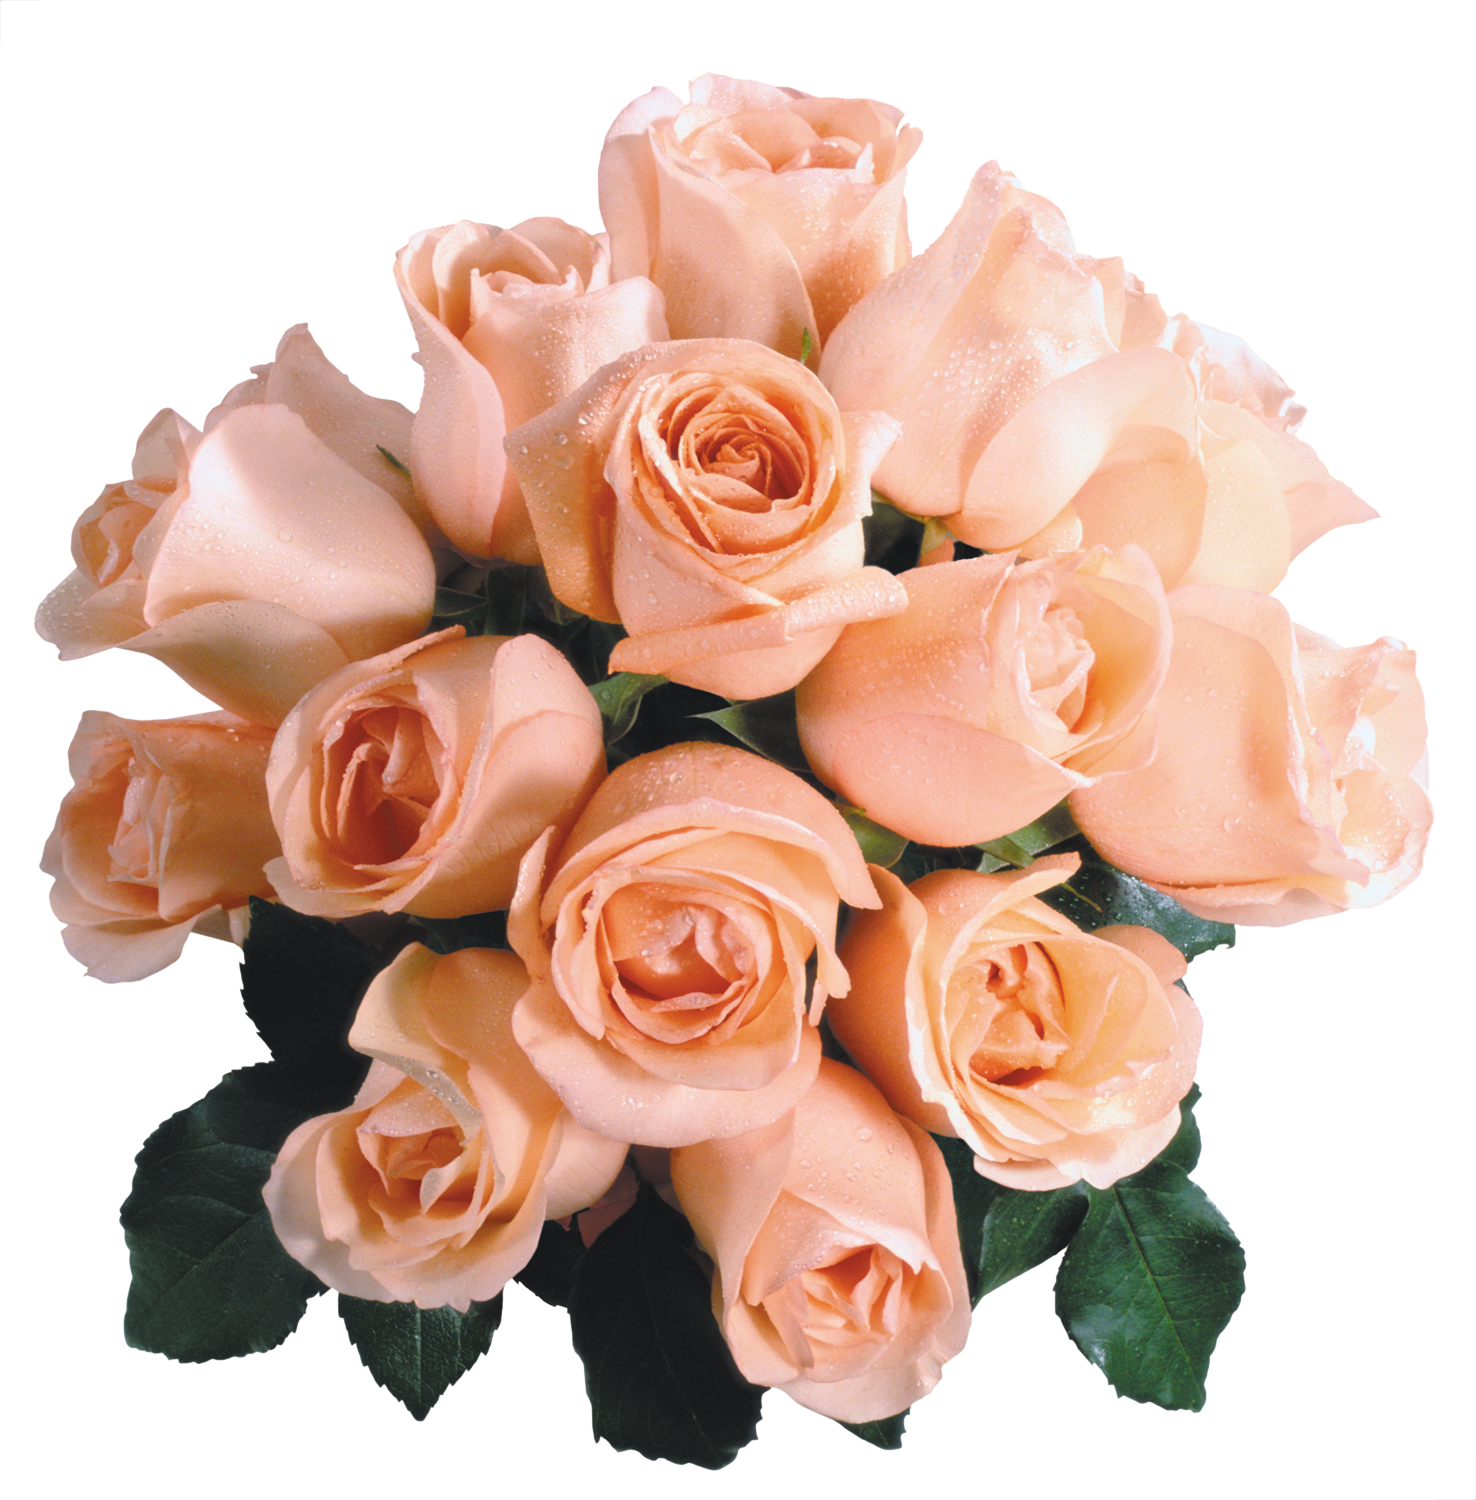 розы фото огромные яркие букеты блестяшки